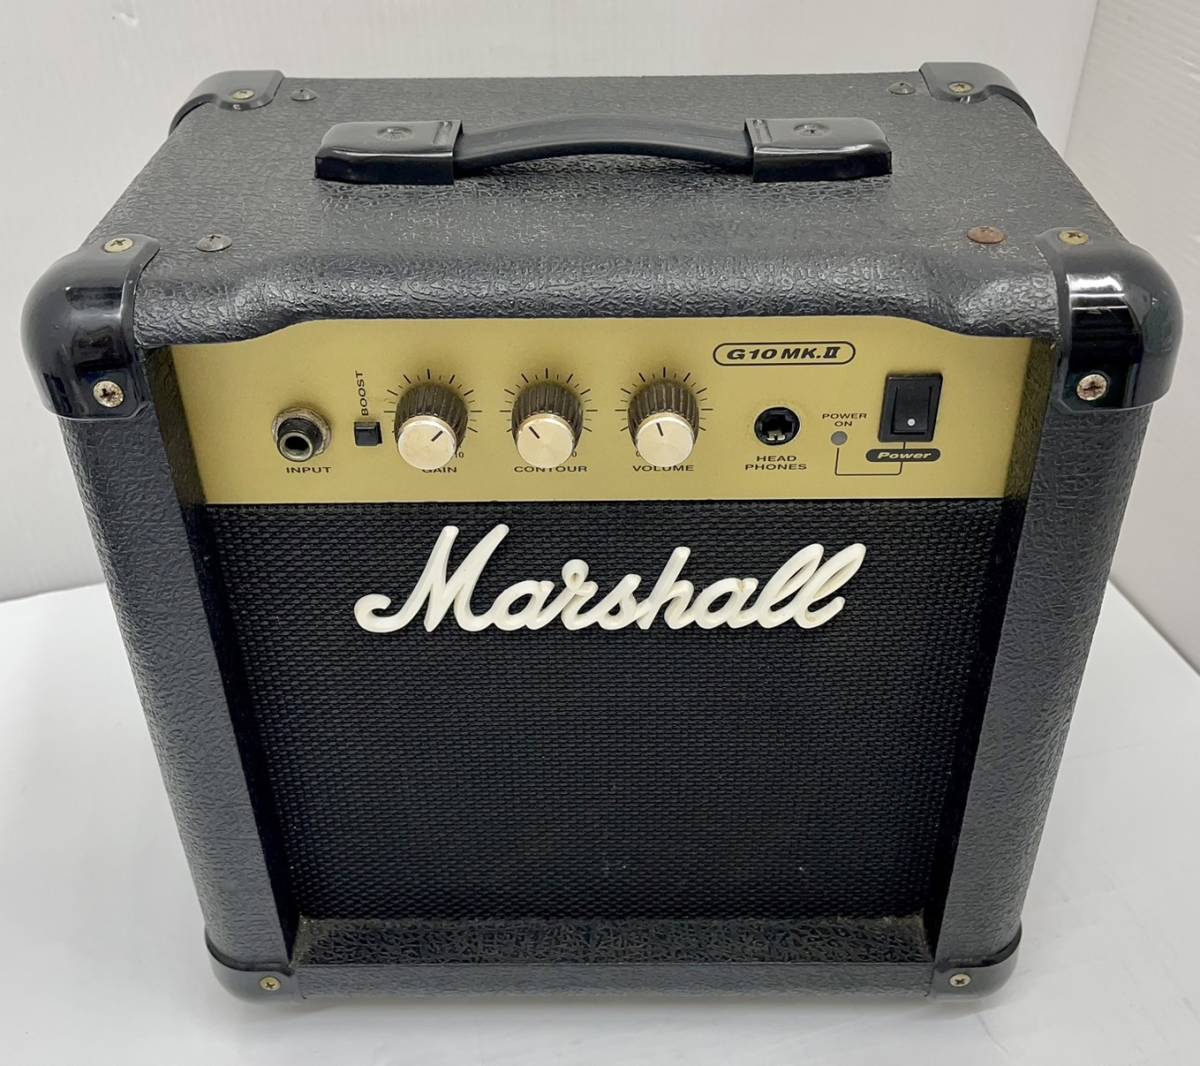 送料無料h52082 Marshall マーシャル ギターアンプ G10MK. MG Series custom loudspeaker 楽器 器材 音楽 コンボ_画像1